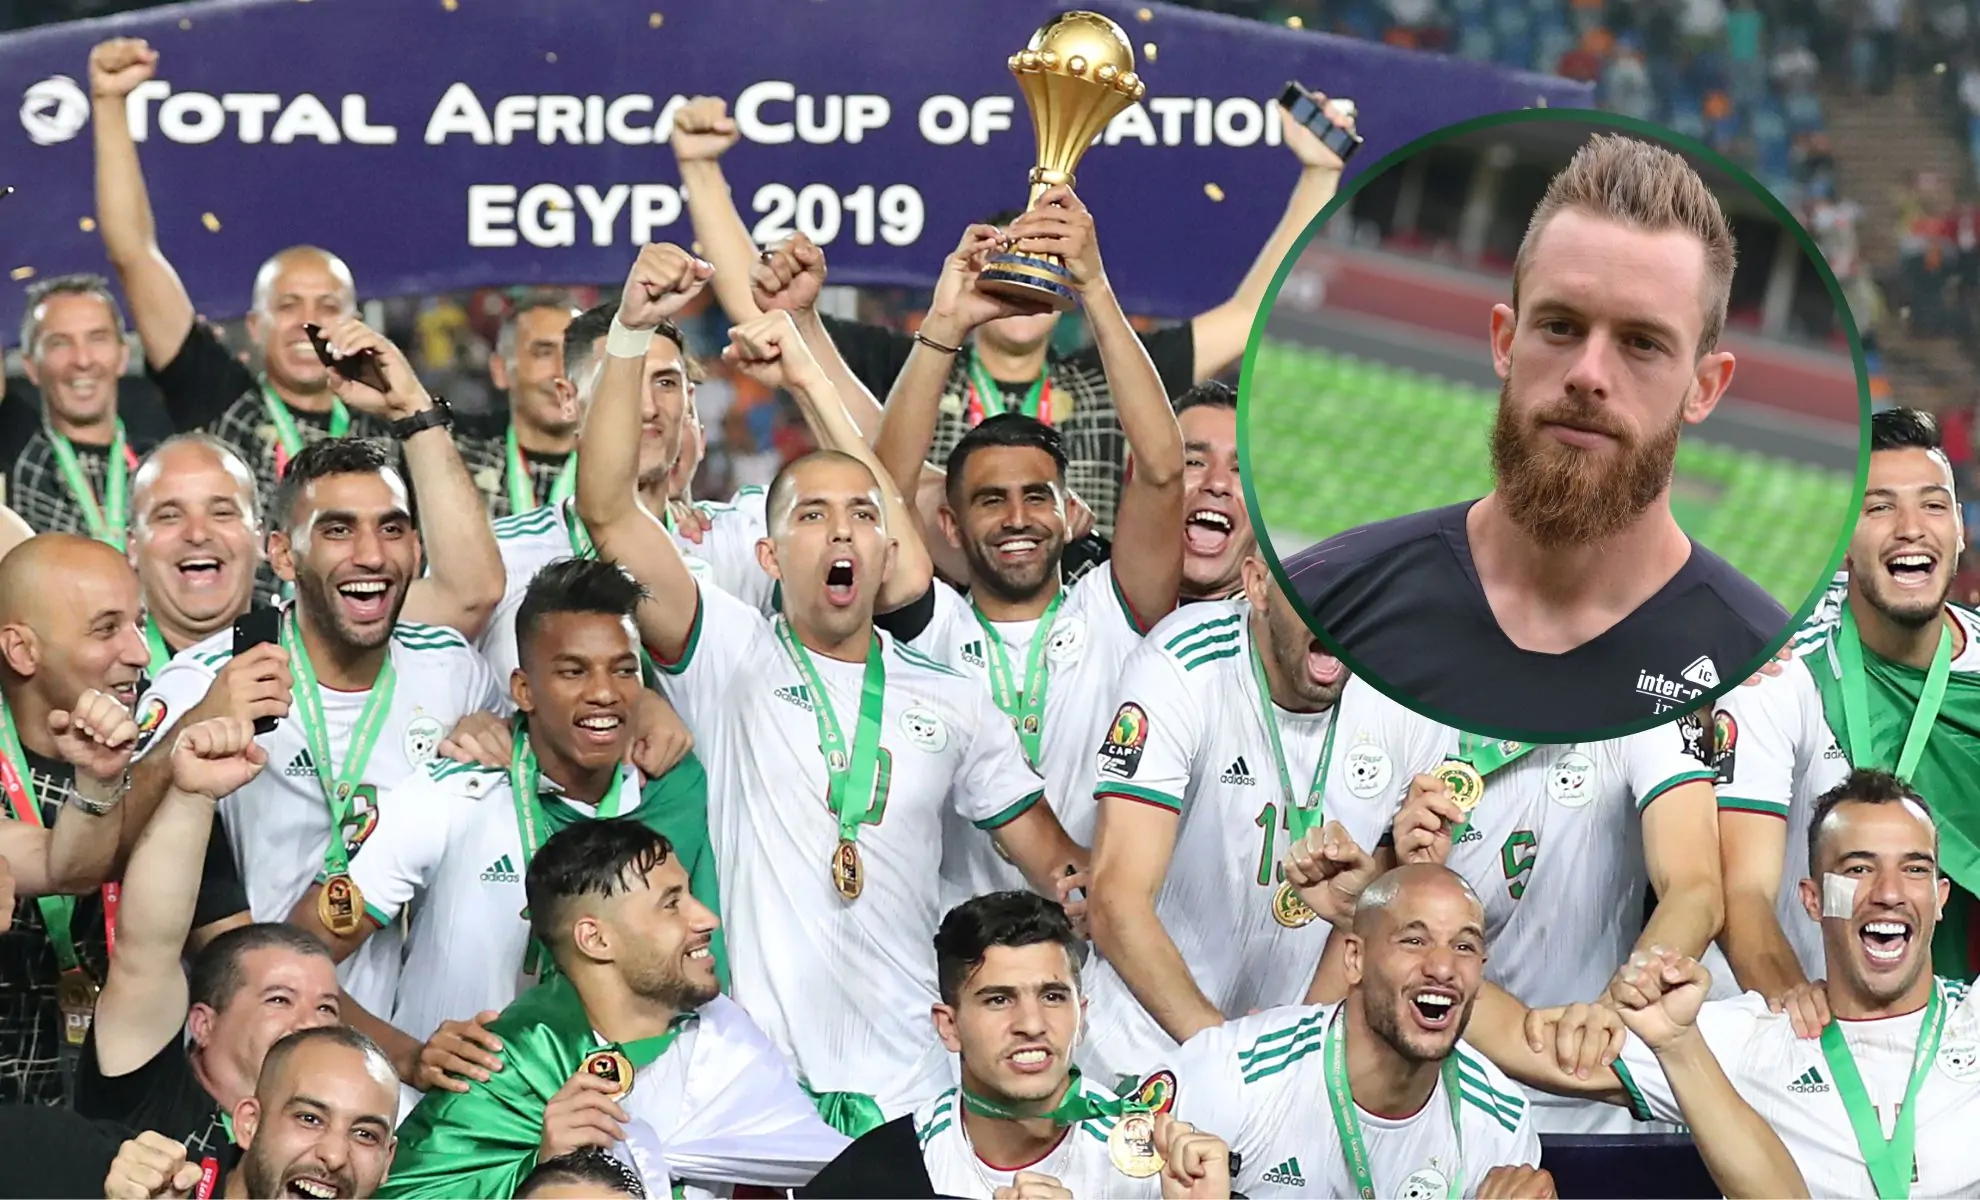 Alexandre Oukidja sur une photo de la finale de la CAN 2019 remportée par l'équipe d'Algérie en Égypte